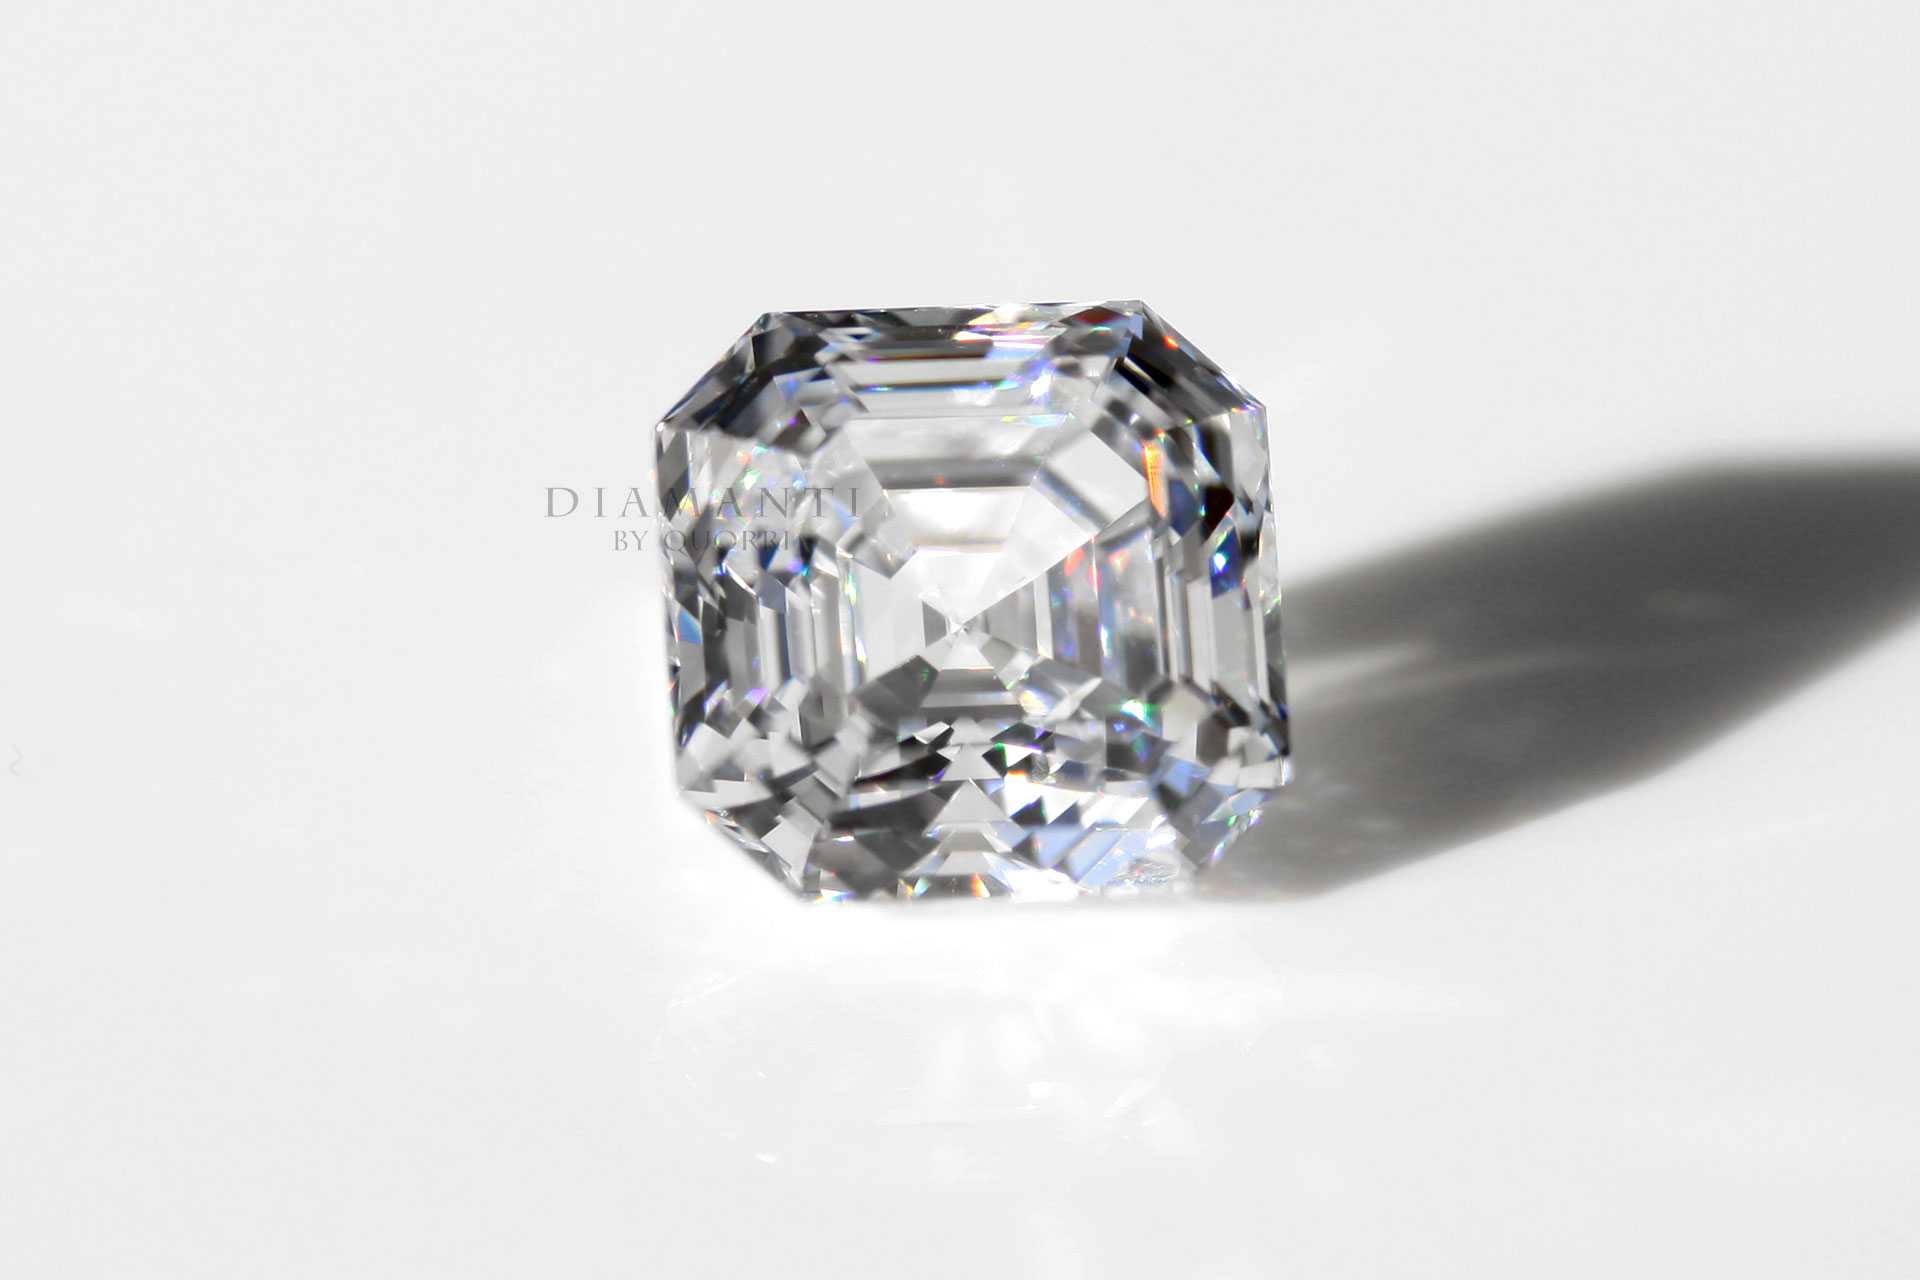 Asscher cut lab grown diamond at Quorri 